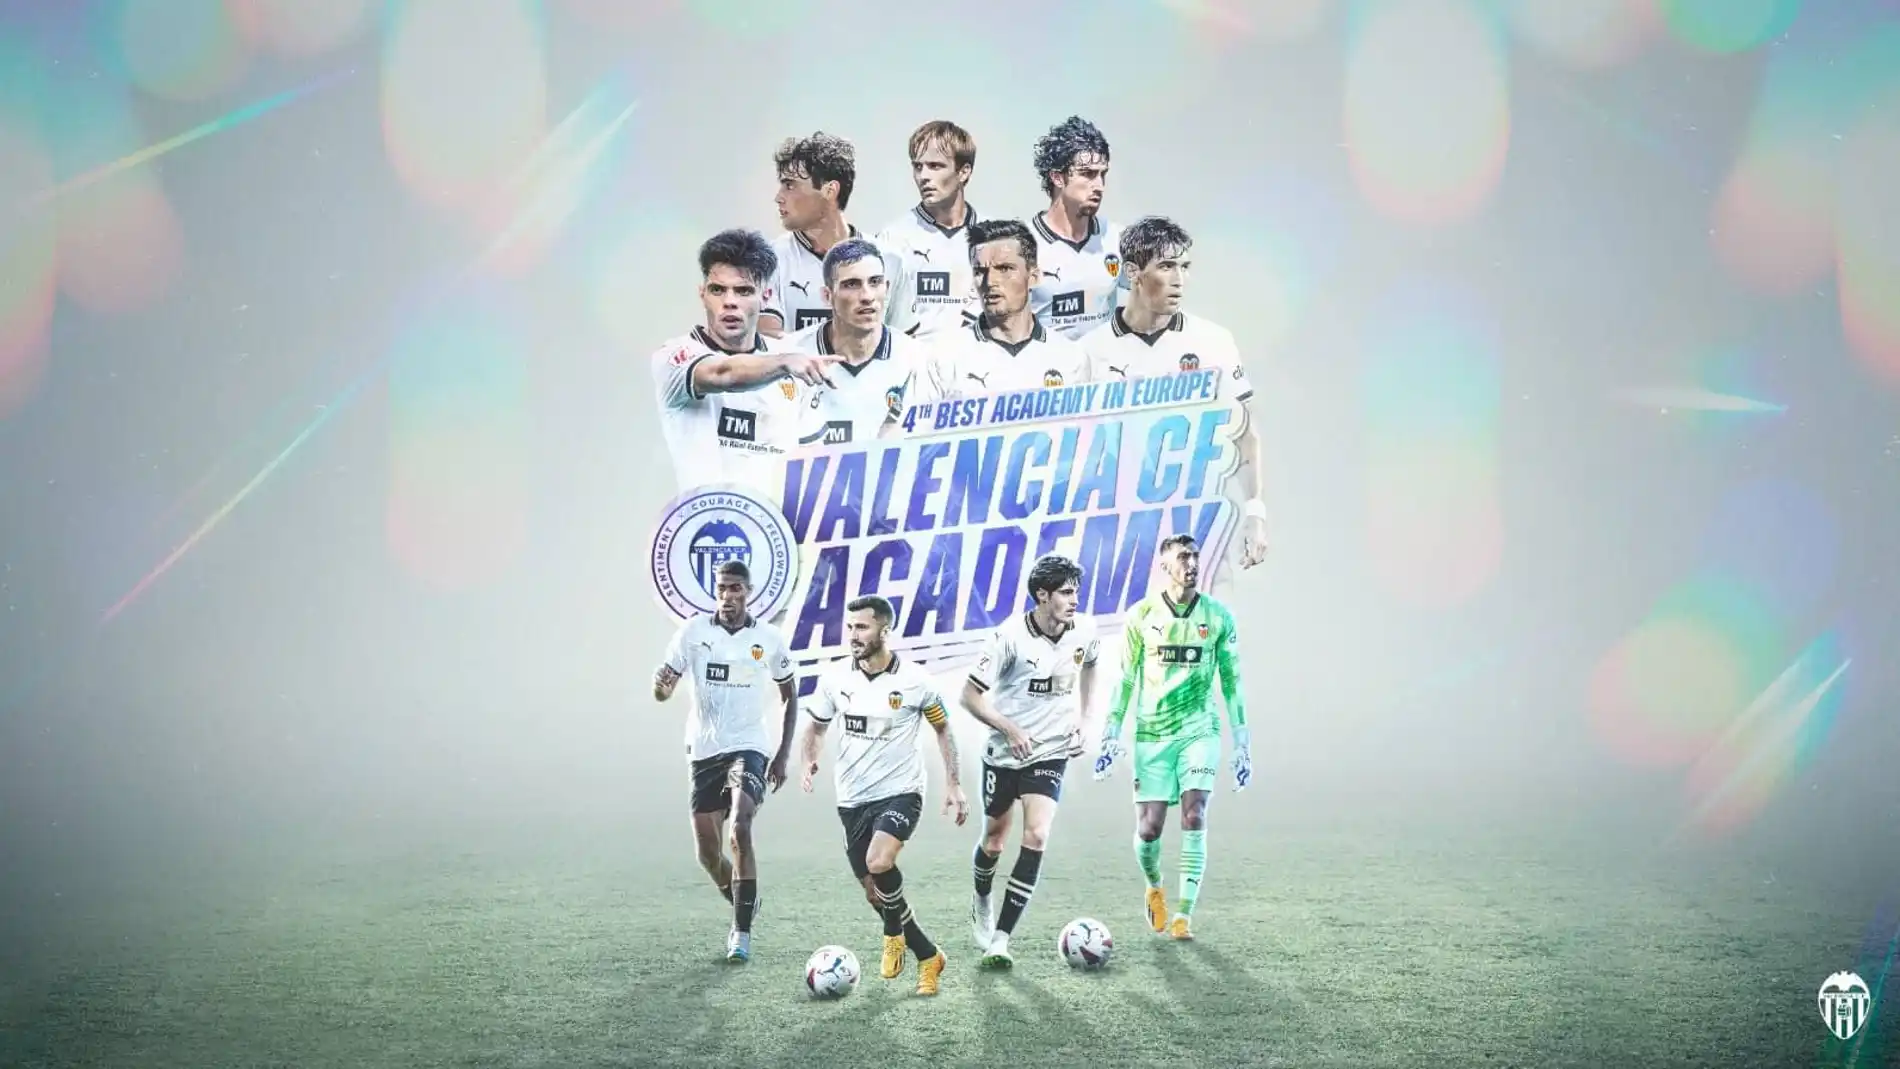 La Academia del Valencia CF, la cuarta mejor de Europa